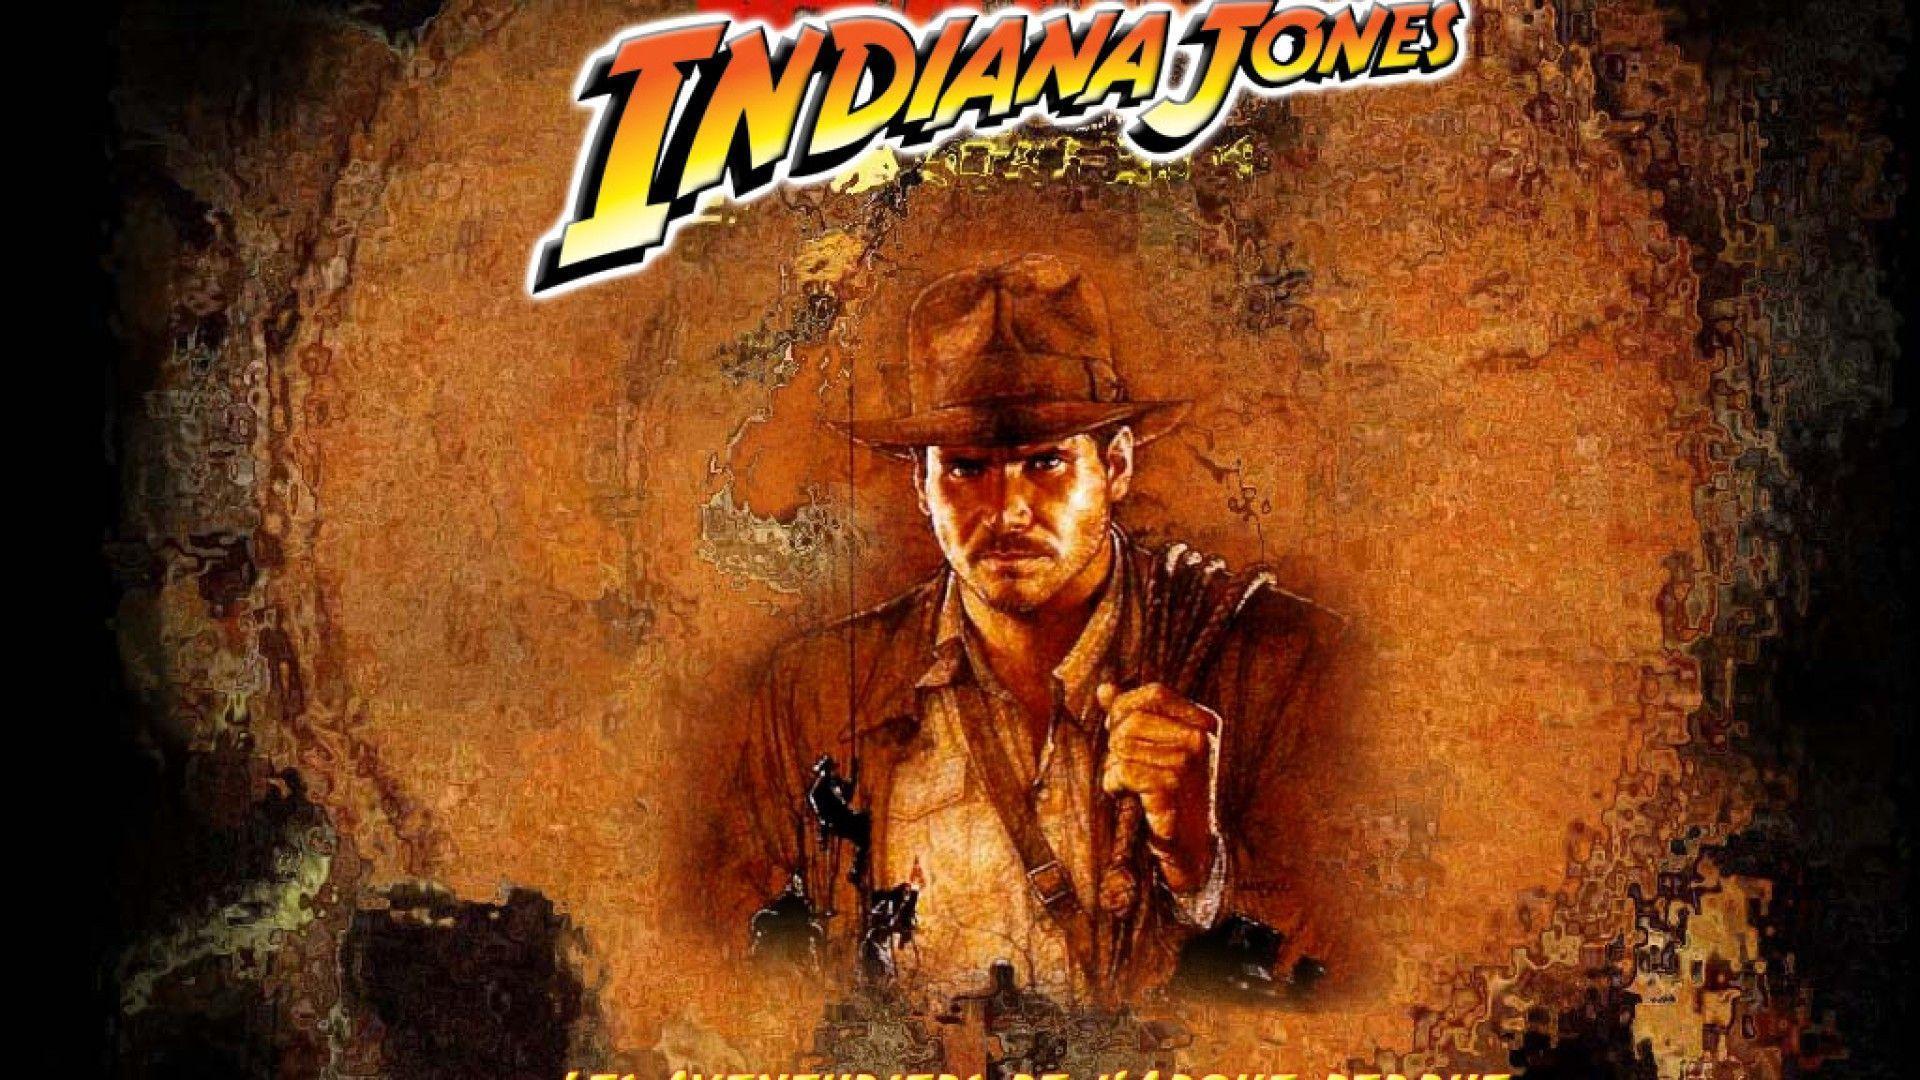 Indiana Jones Wallpaper. Android Jones Wallpaper, Insane Hitman Jones Wallpaper and Indiana Jones Wallpaper